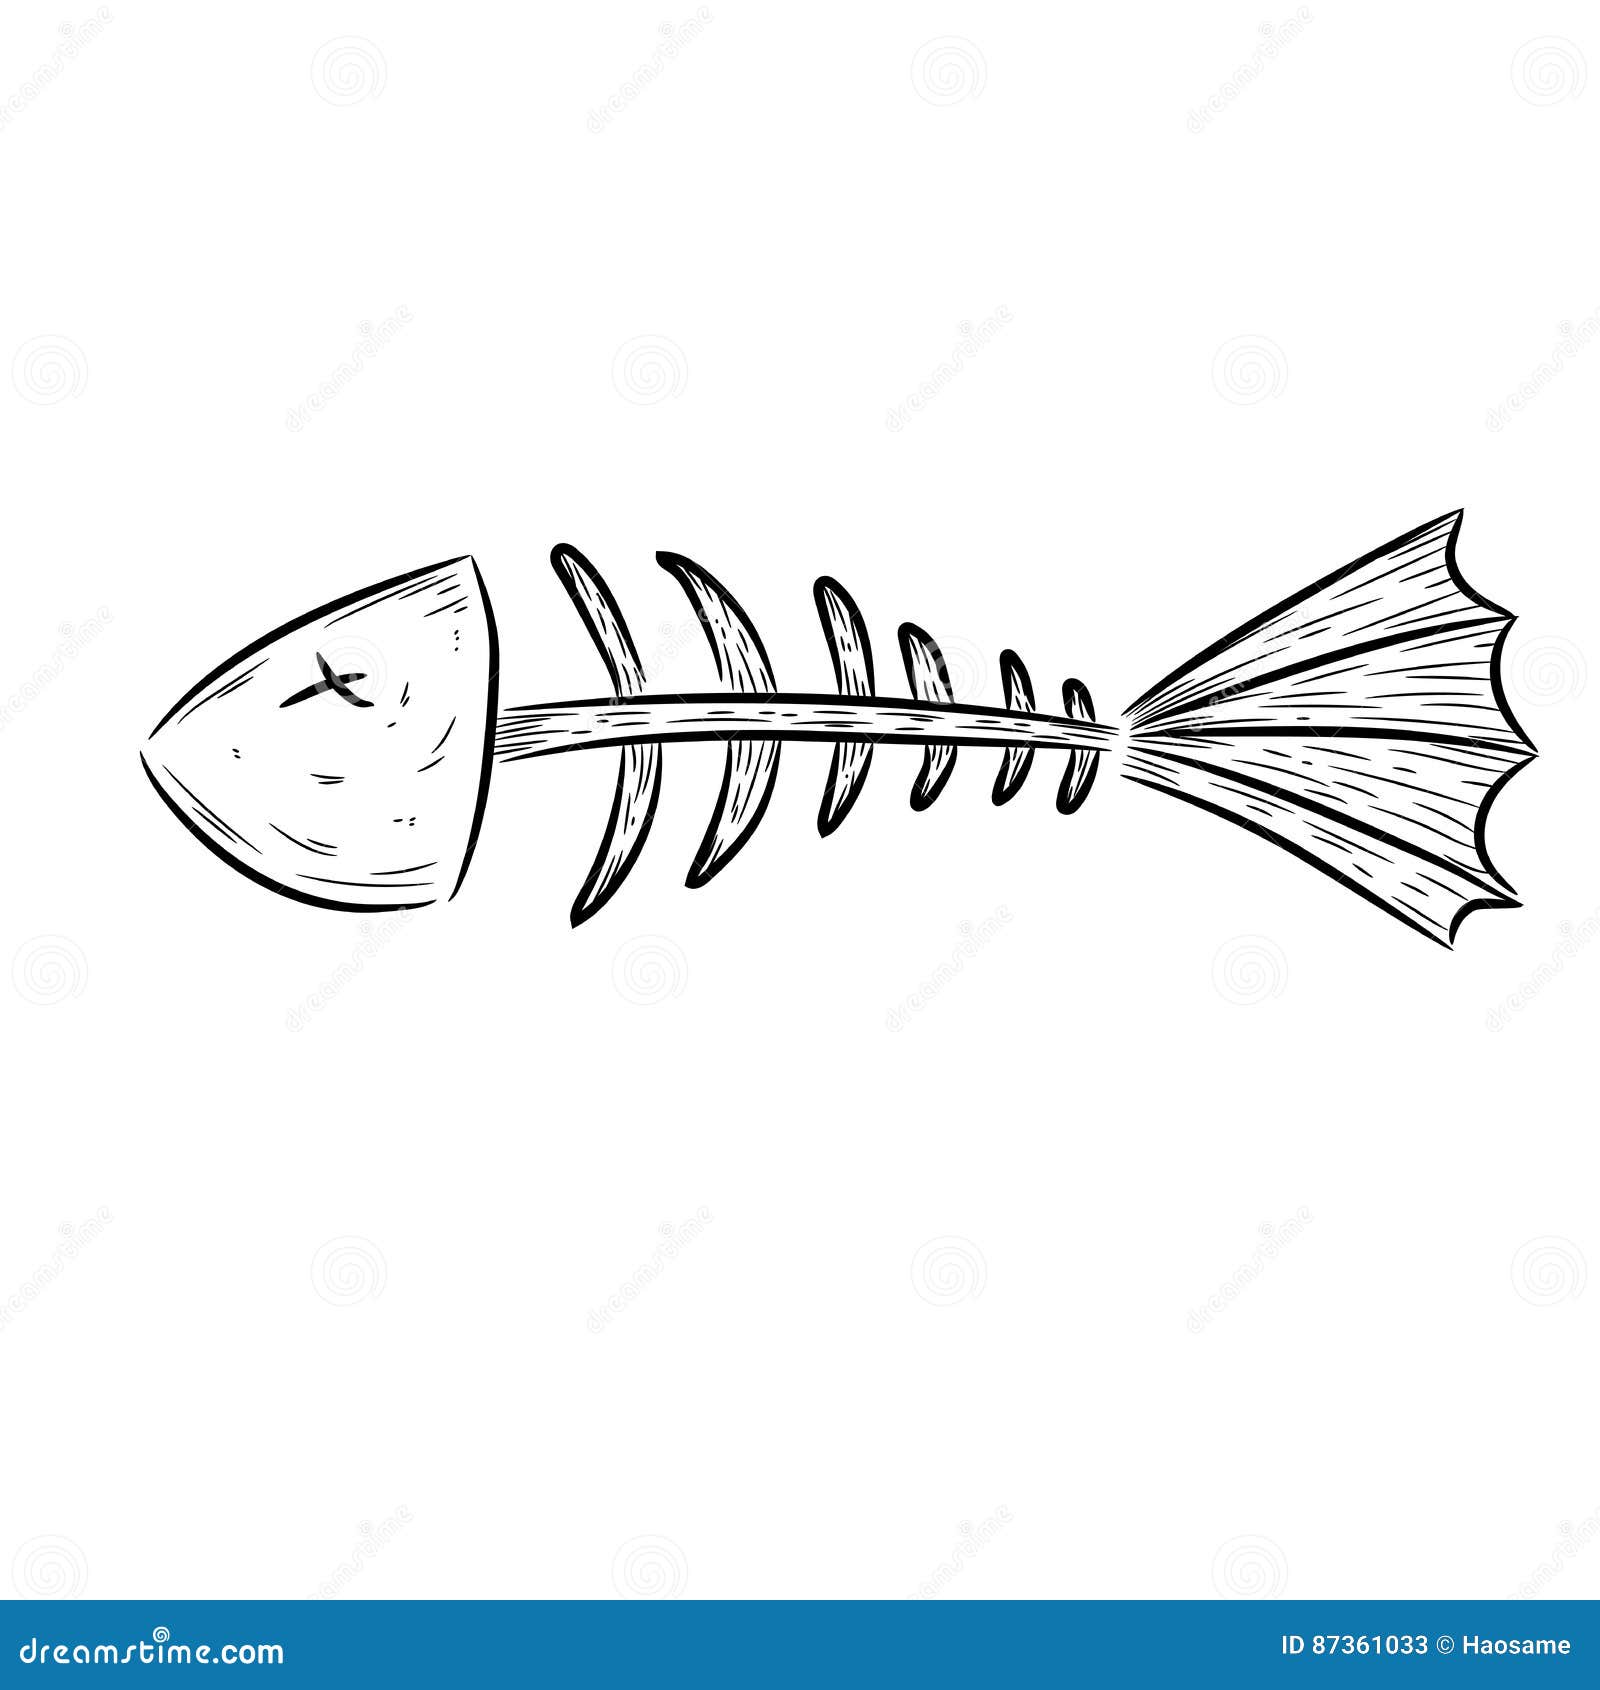 Fish bone, fish skeleton stock vector. Illustration of draw - 87361033